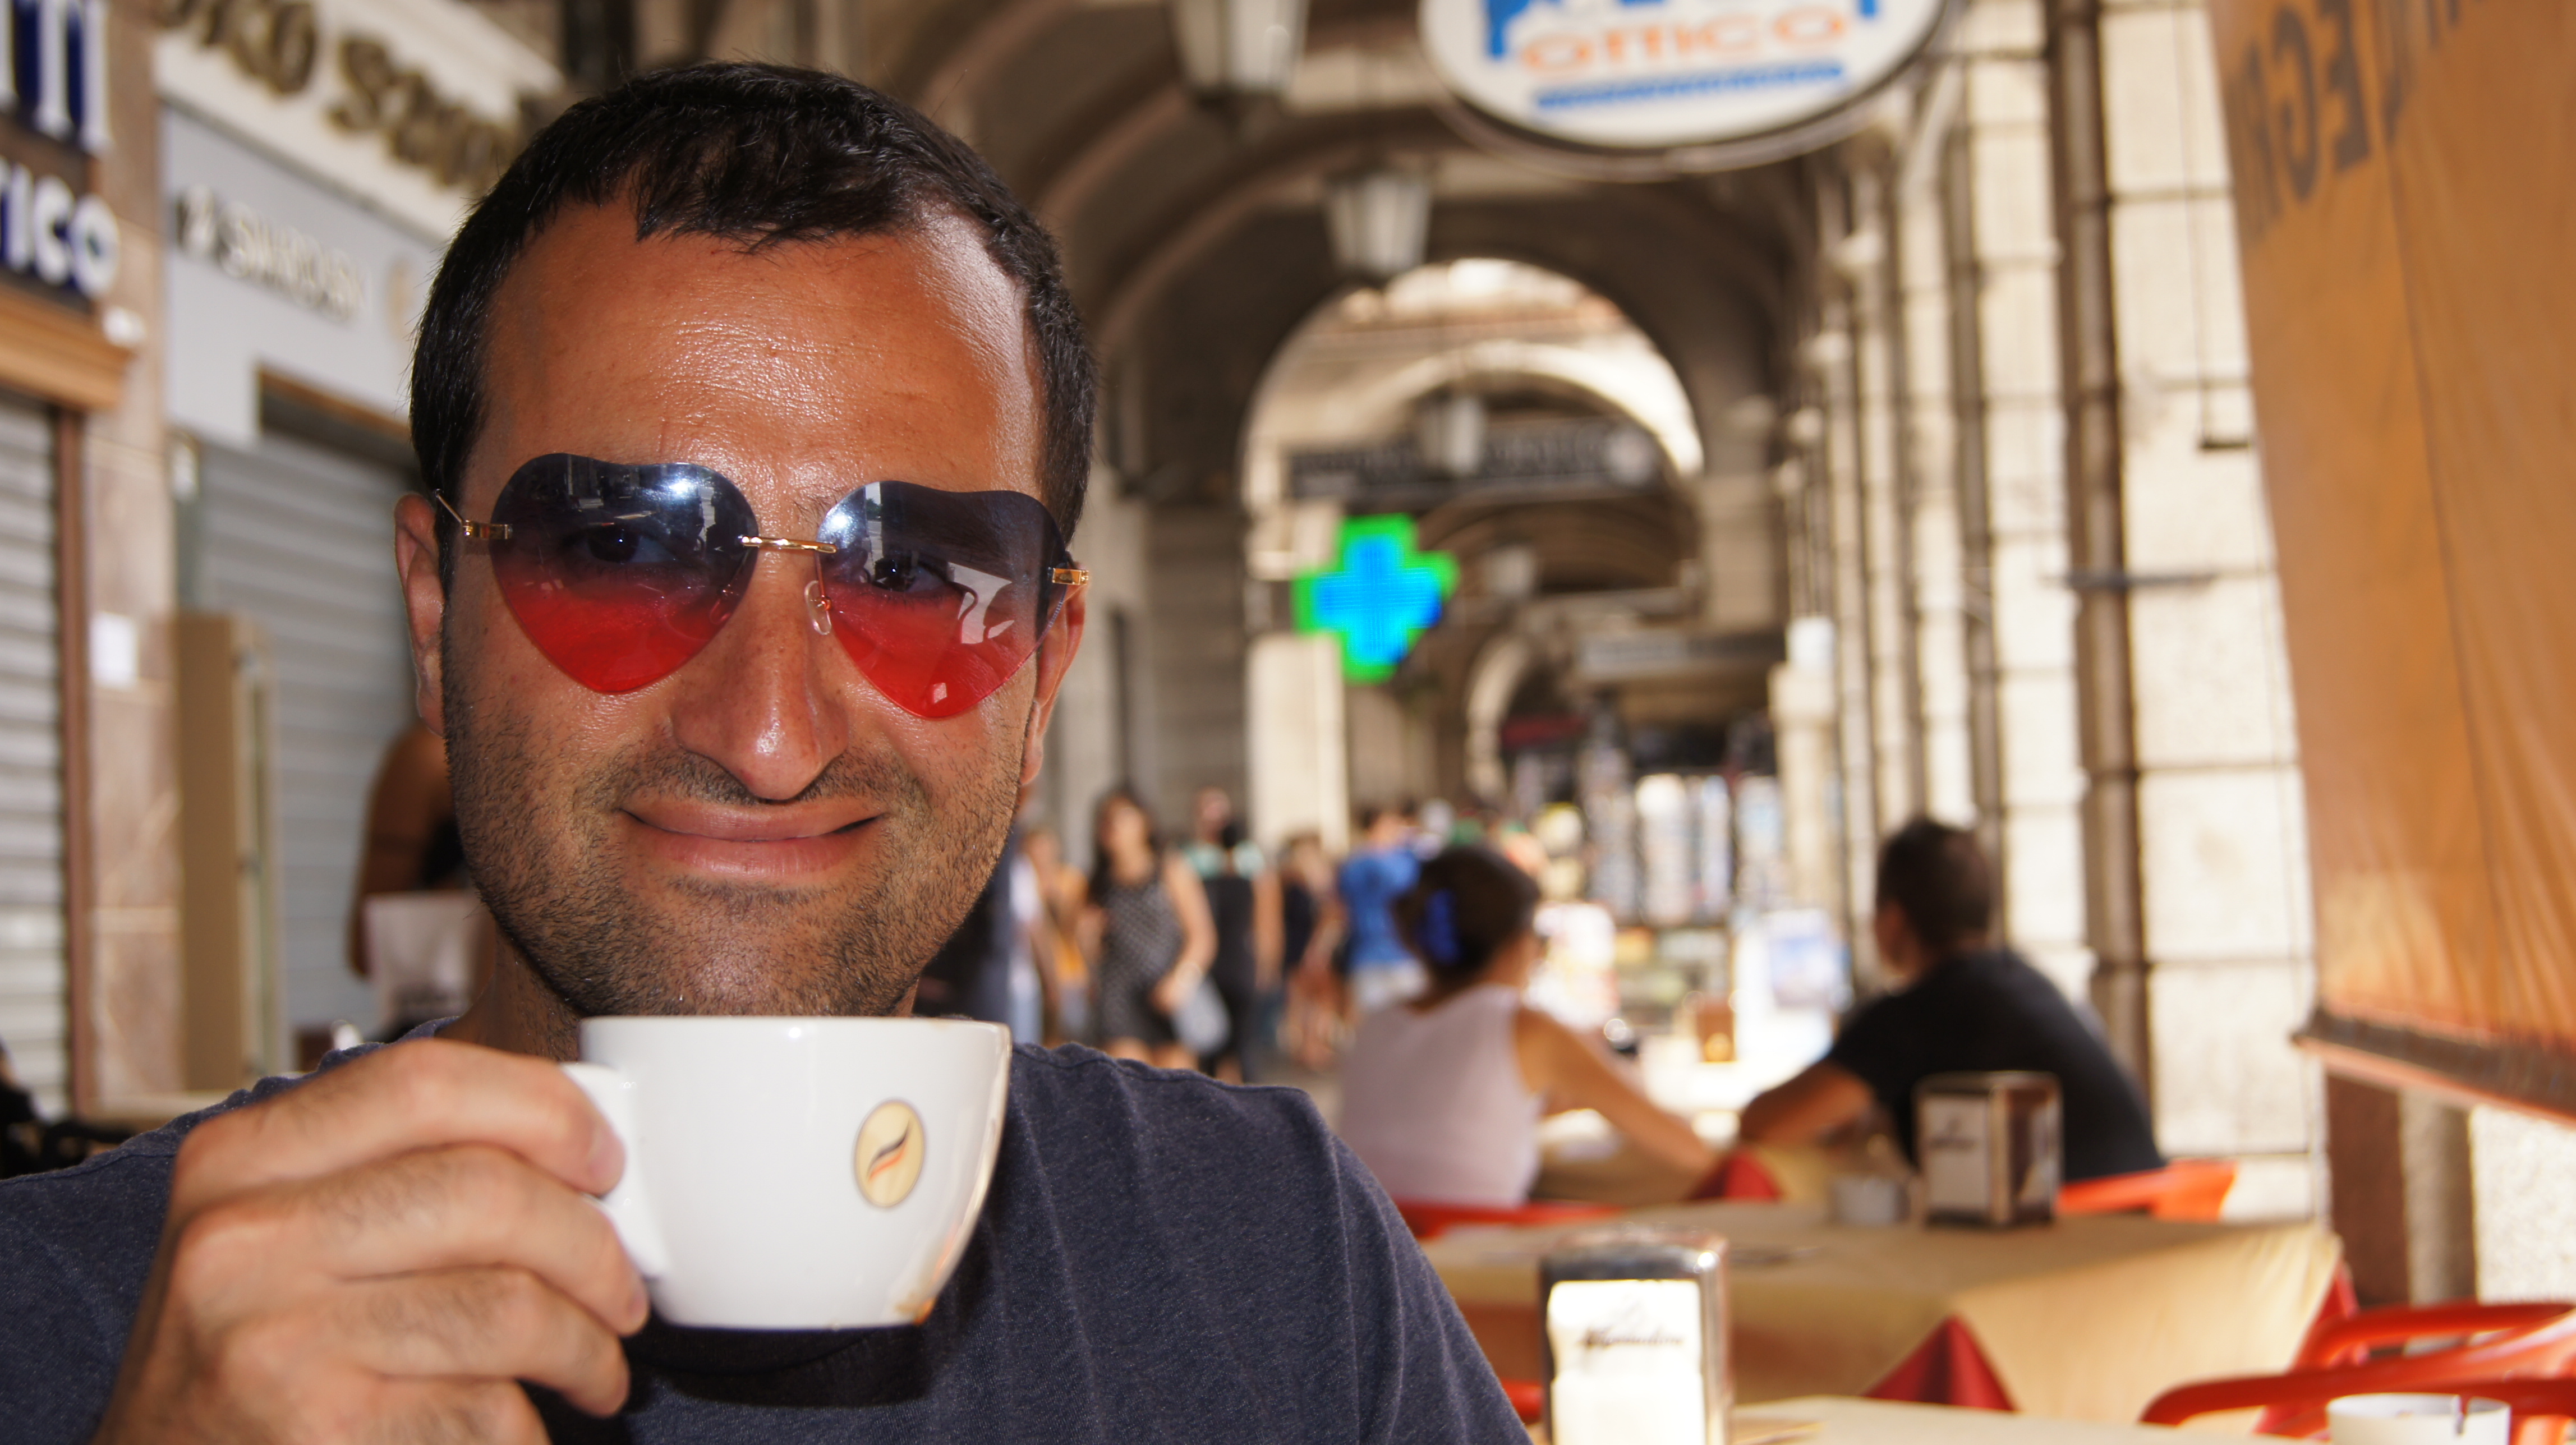 Alireza in Cagliari / Sardinien - Mit einer Tasse Cafe und seiner "Mr. Lover Lover Brille"